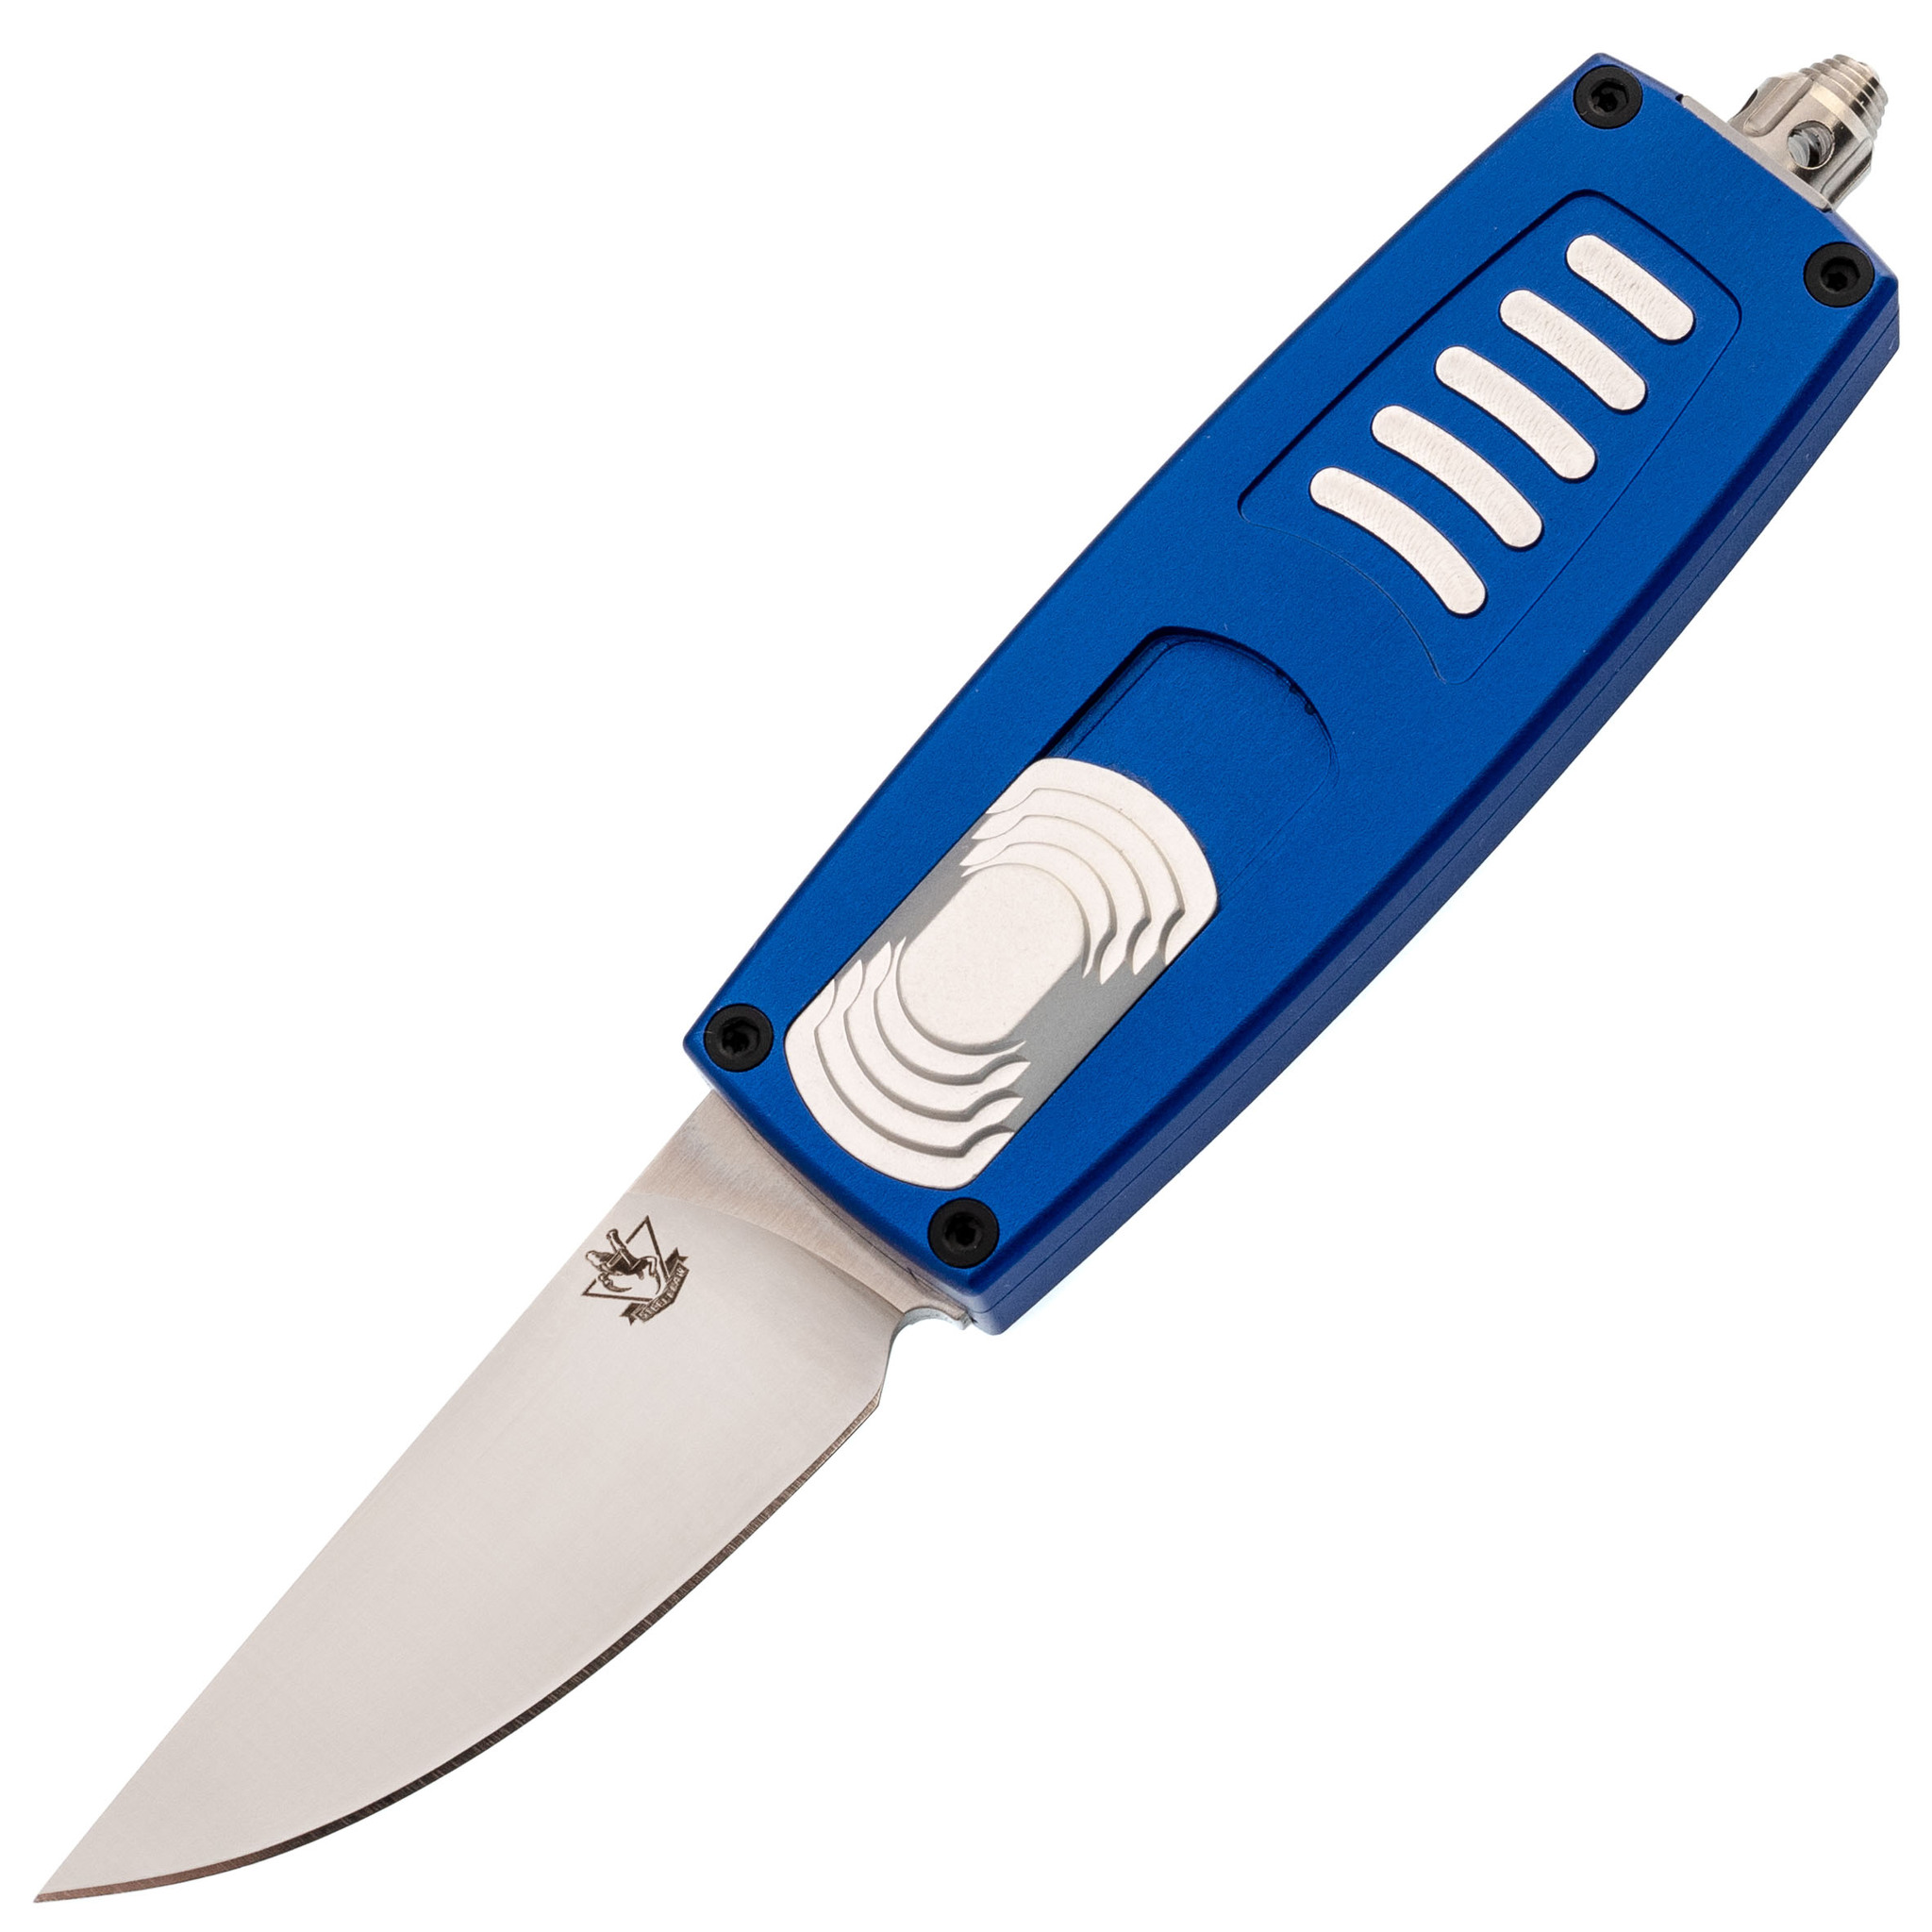 Автоматический нож Steelclaw Криптон-01, сталь D2, рукоять алюминий, синий - фото 1